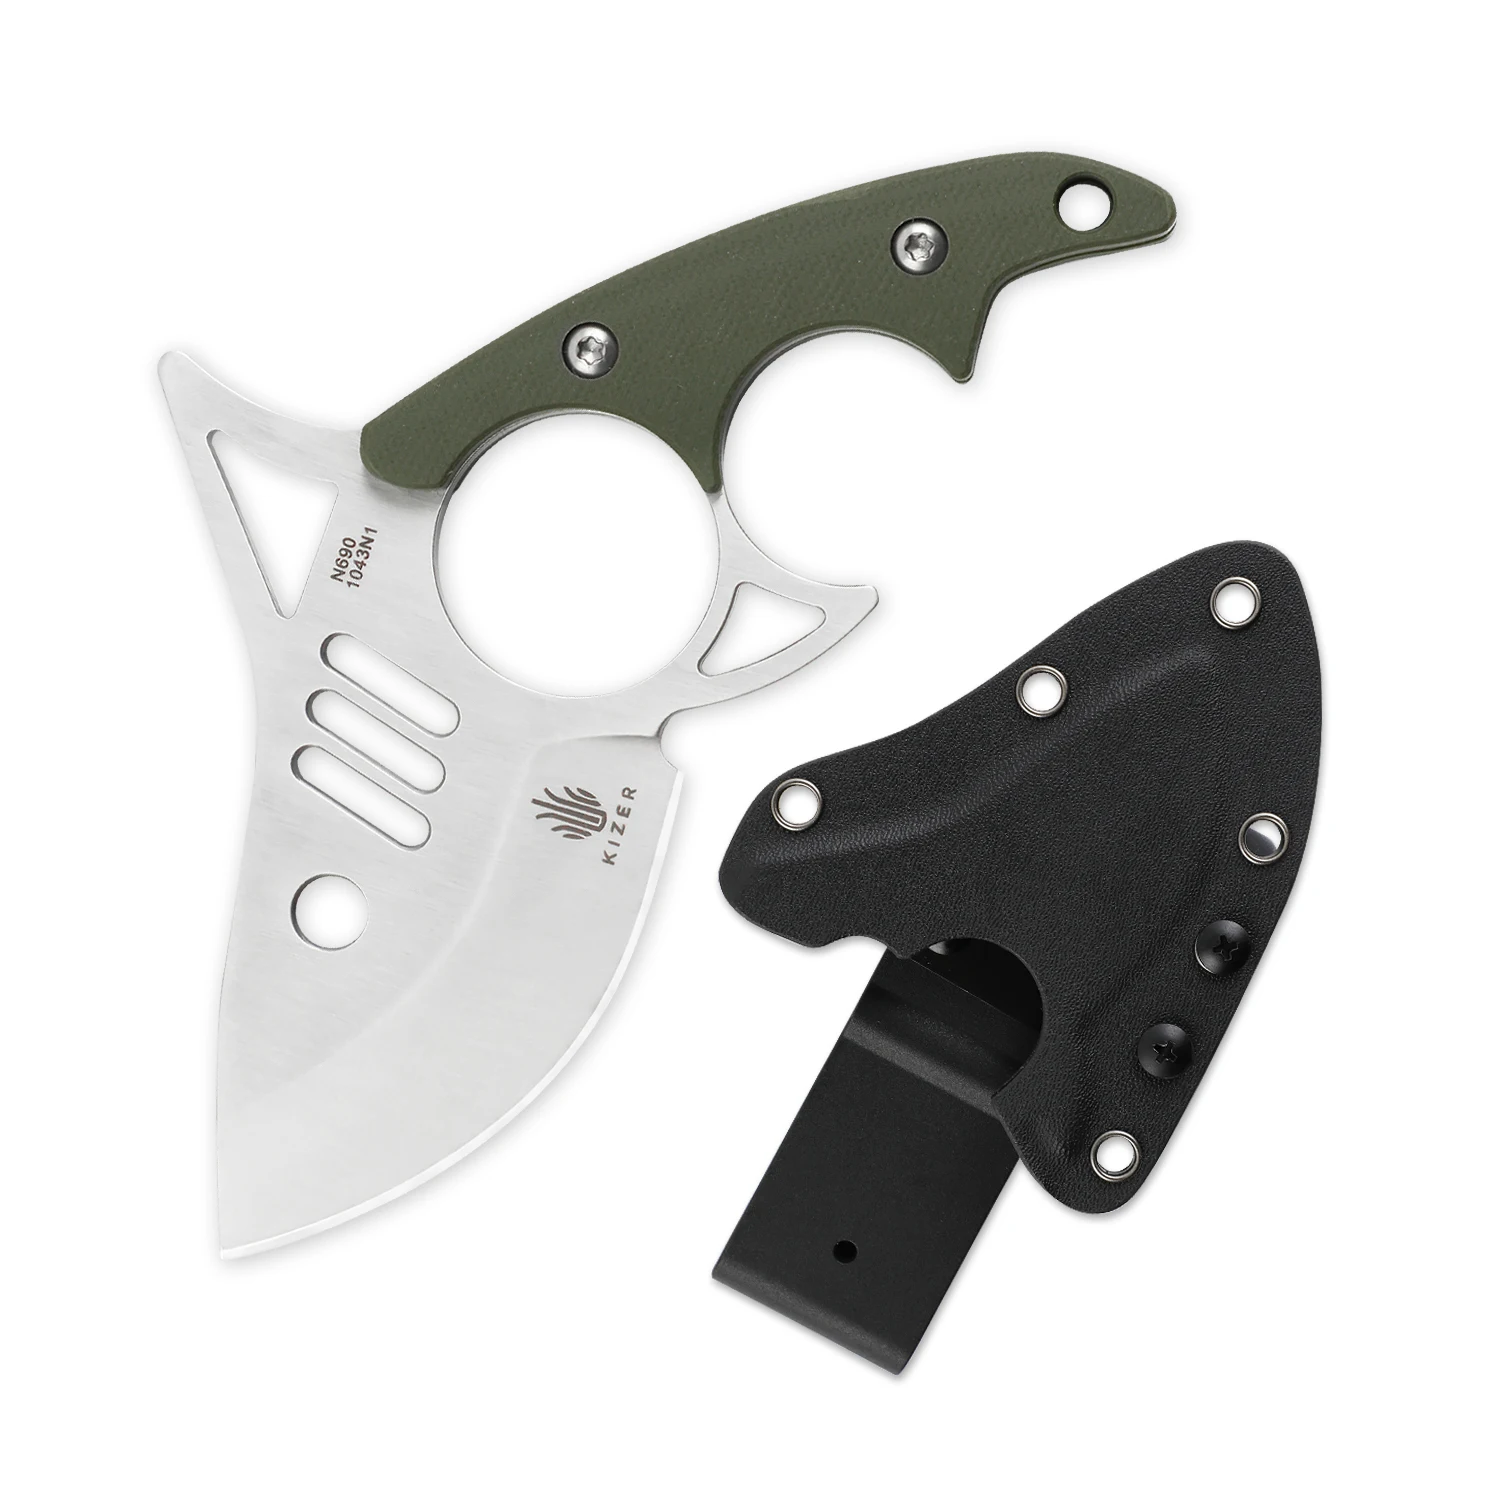 Нож Kizer с фиксированным лезвием и зубцами акулы 1043N1 походный охотничий нож для